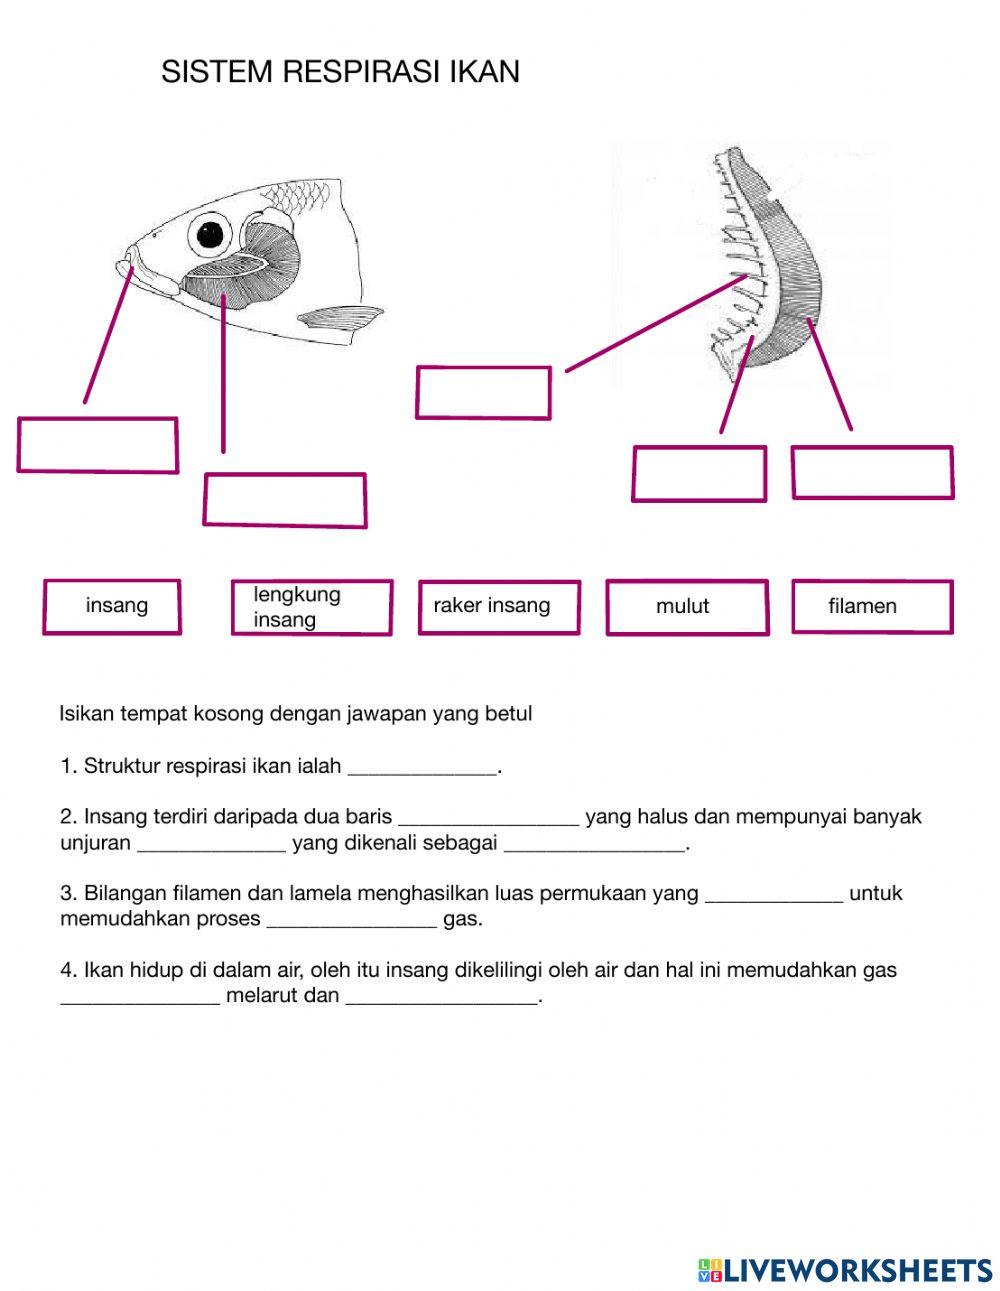 Sistem respirasi ikan